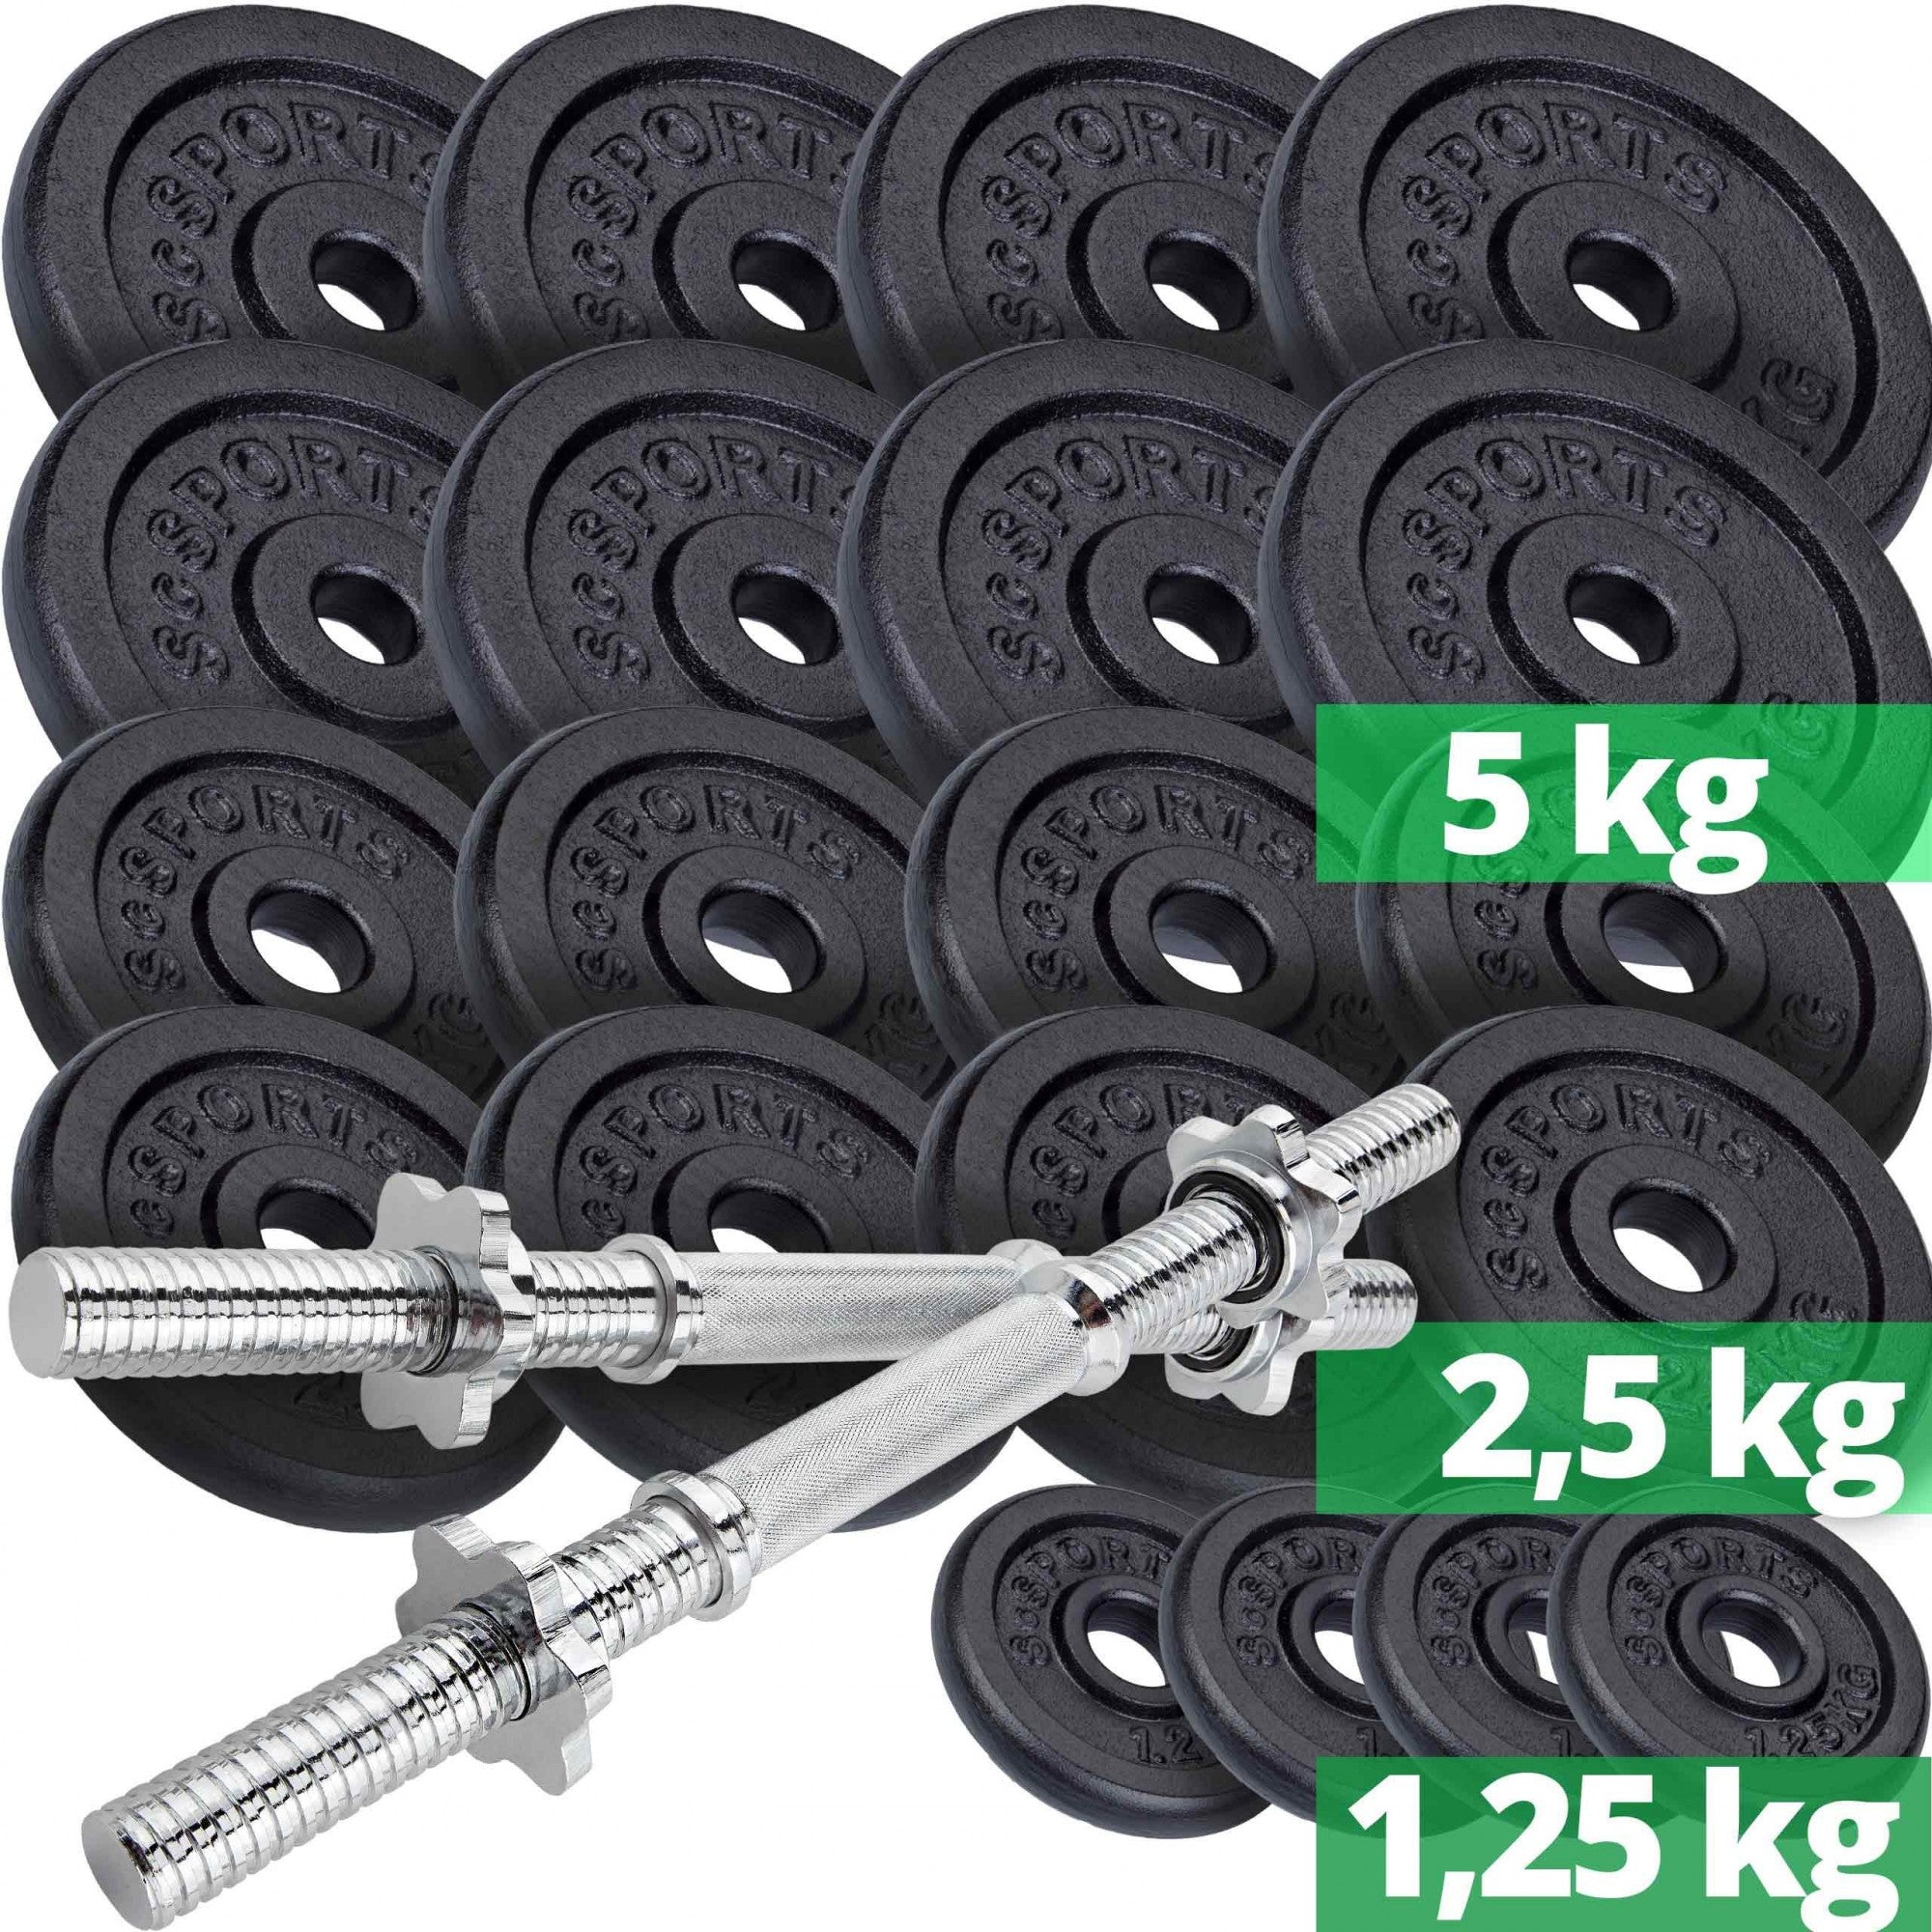 Håndvægtssæt – 70 kg, vægtskiver: 8×5 kg, 8×2,5 kg og 4×1,25 kg